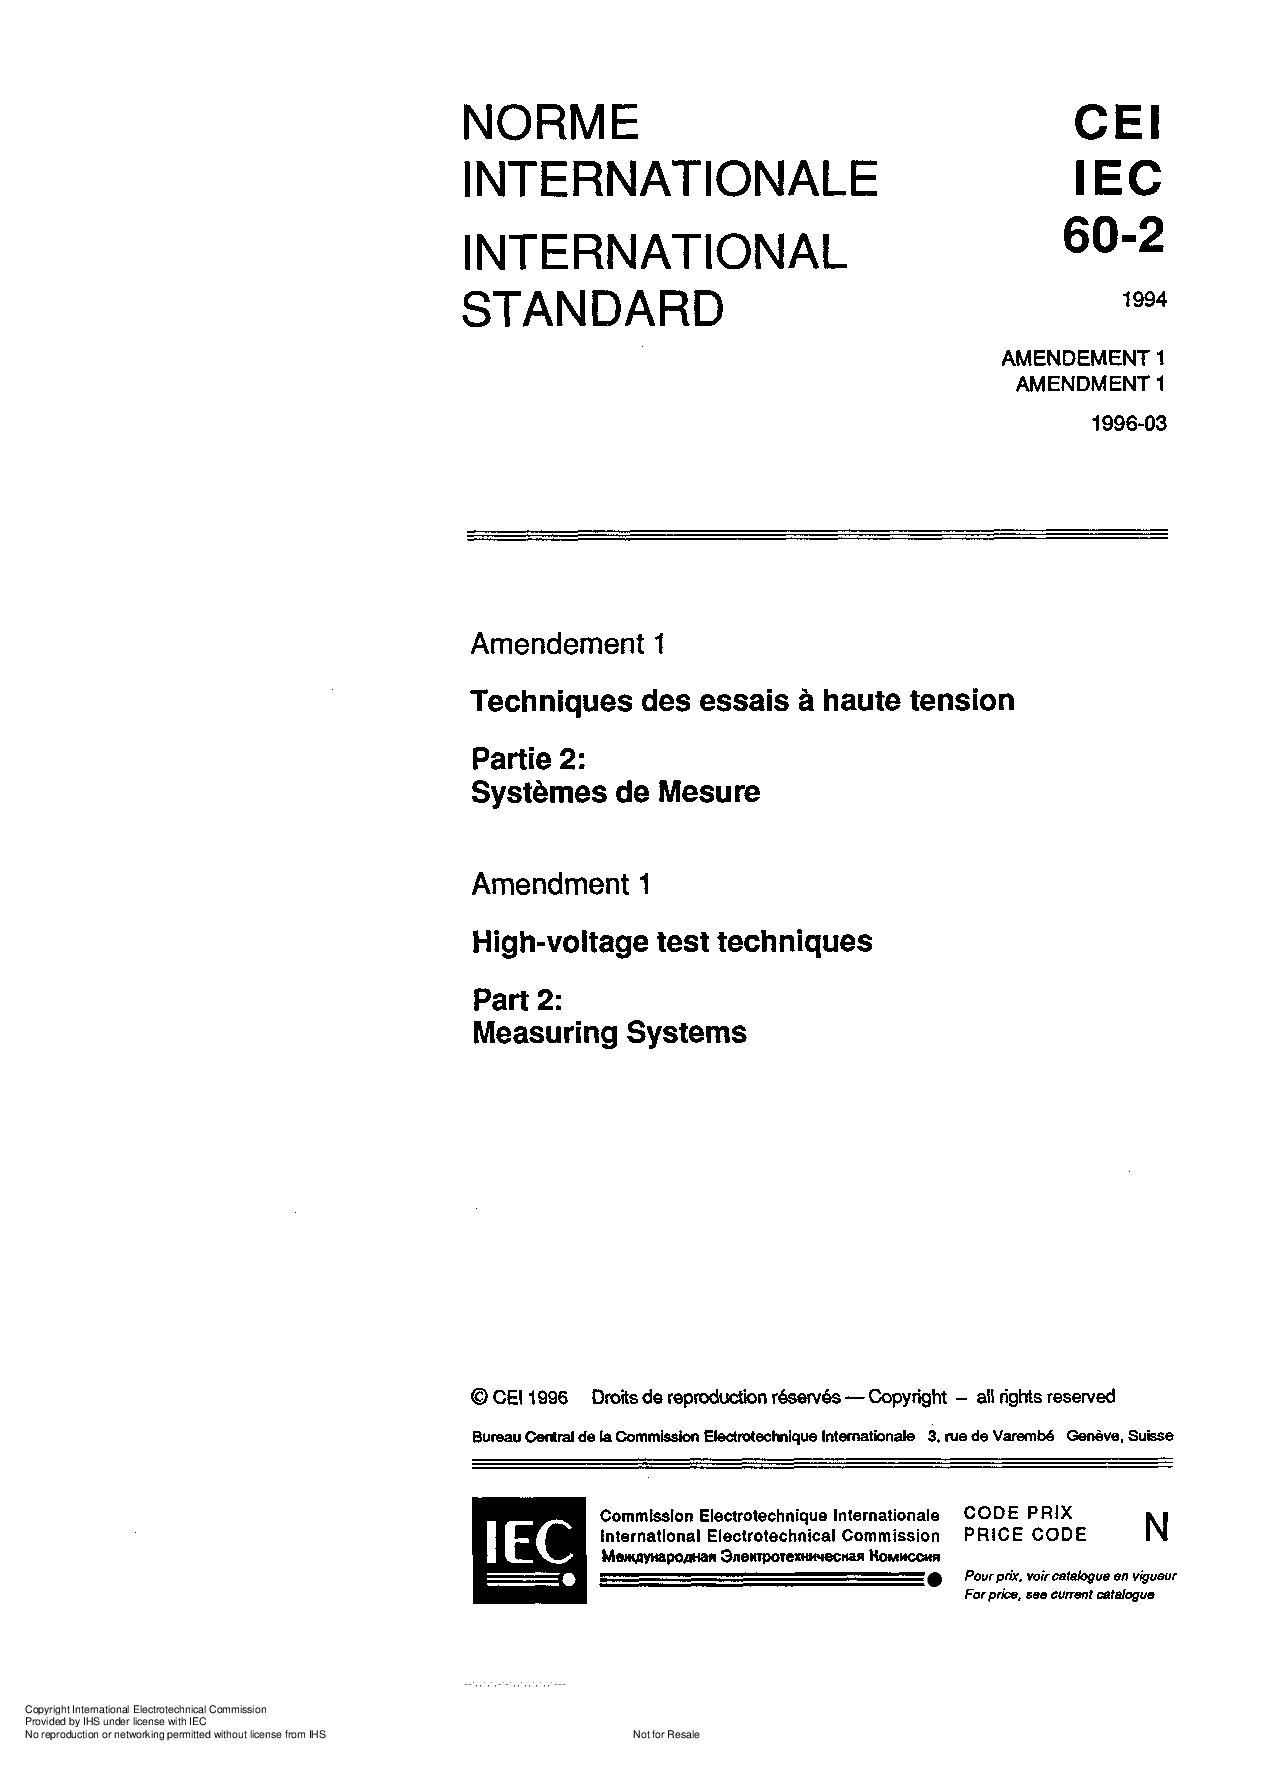 IEC 60060-2-1994